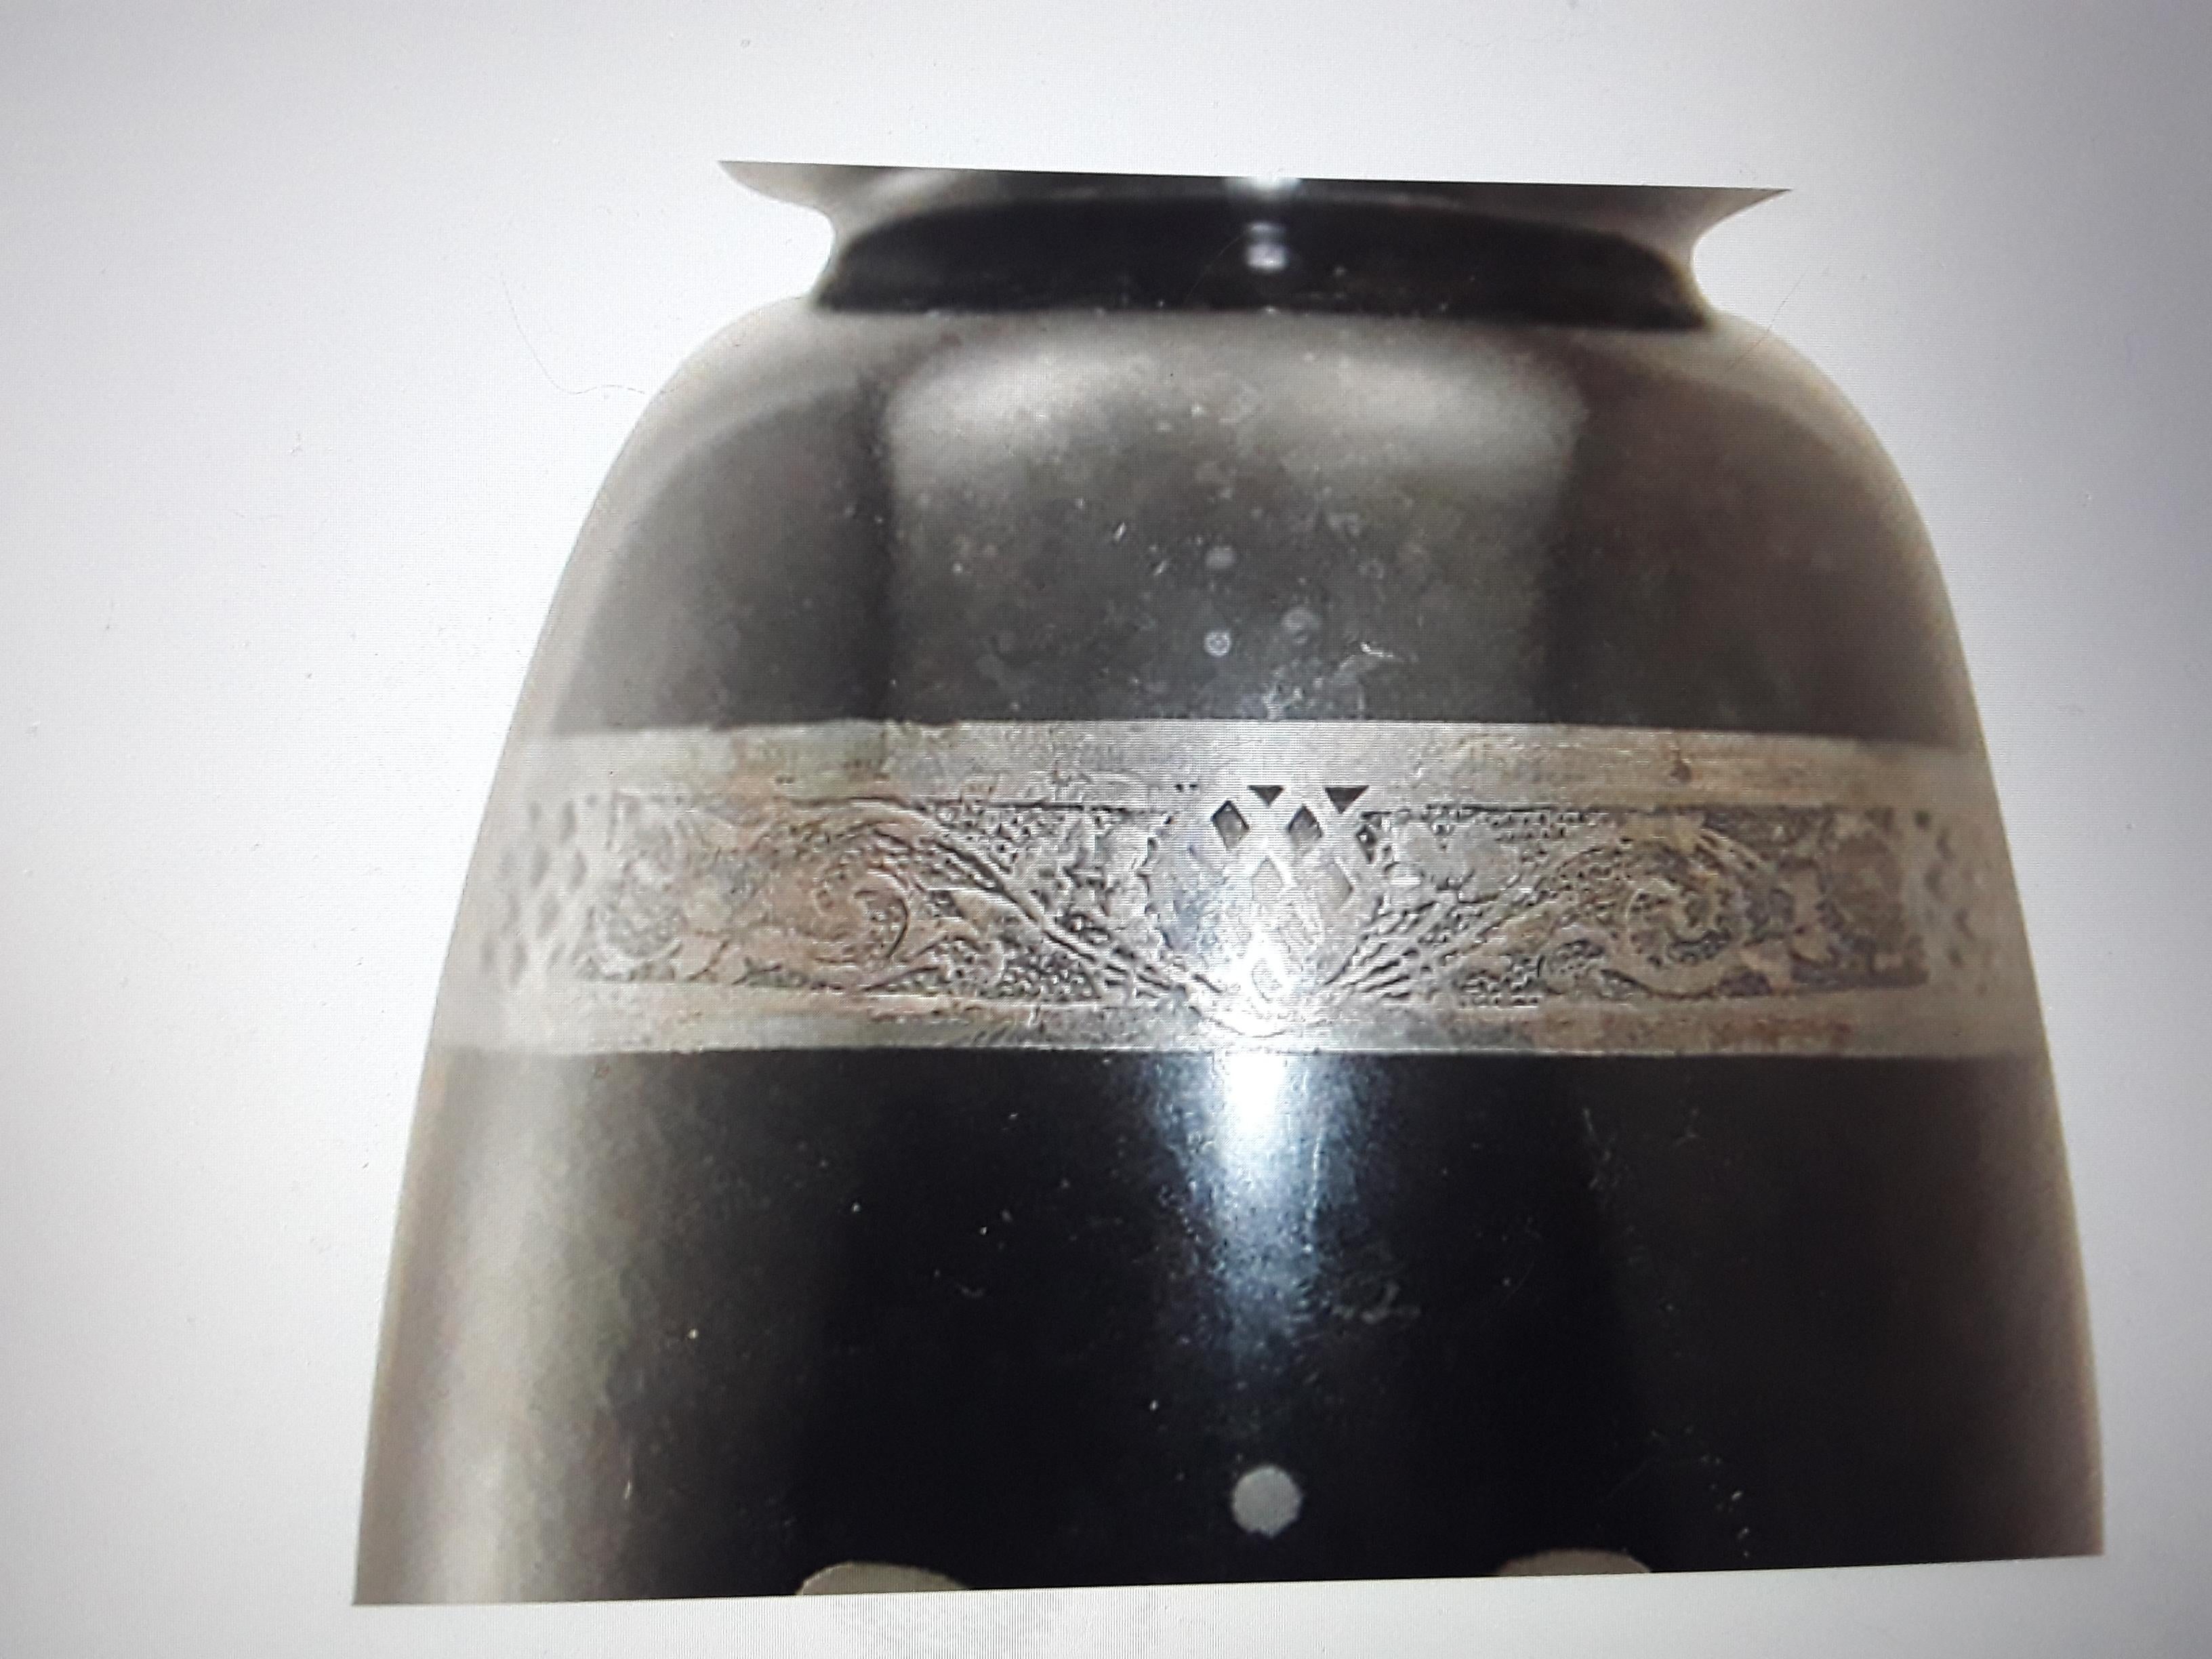 1930's Art Deco Era Black Art Glass Vase geschliffen von Hawkes Steuben Glassworks Vase. Beaufsichtigt von Frederick Carder. 